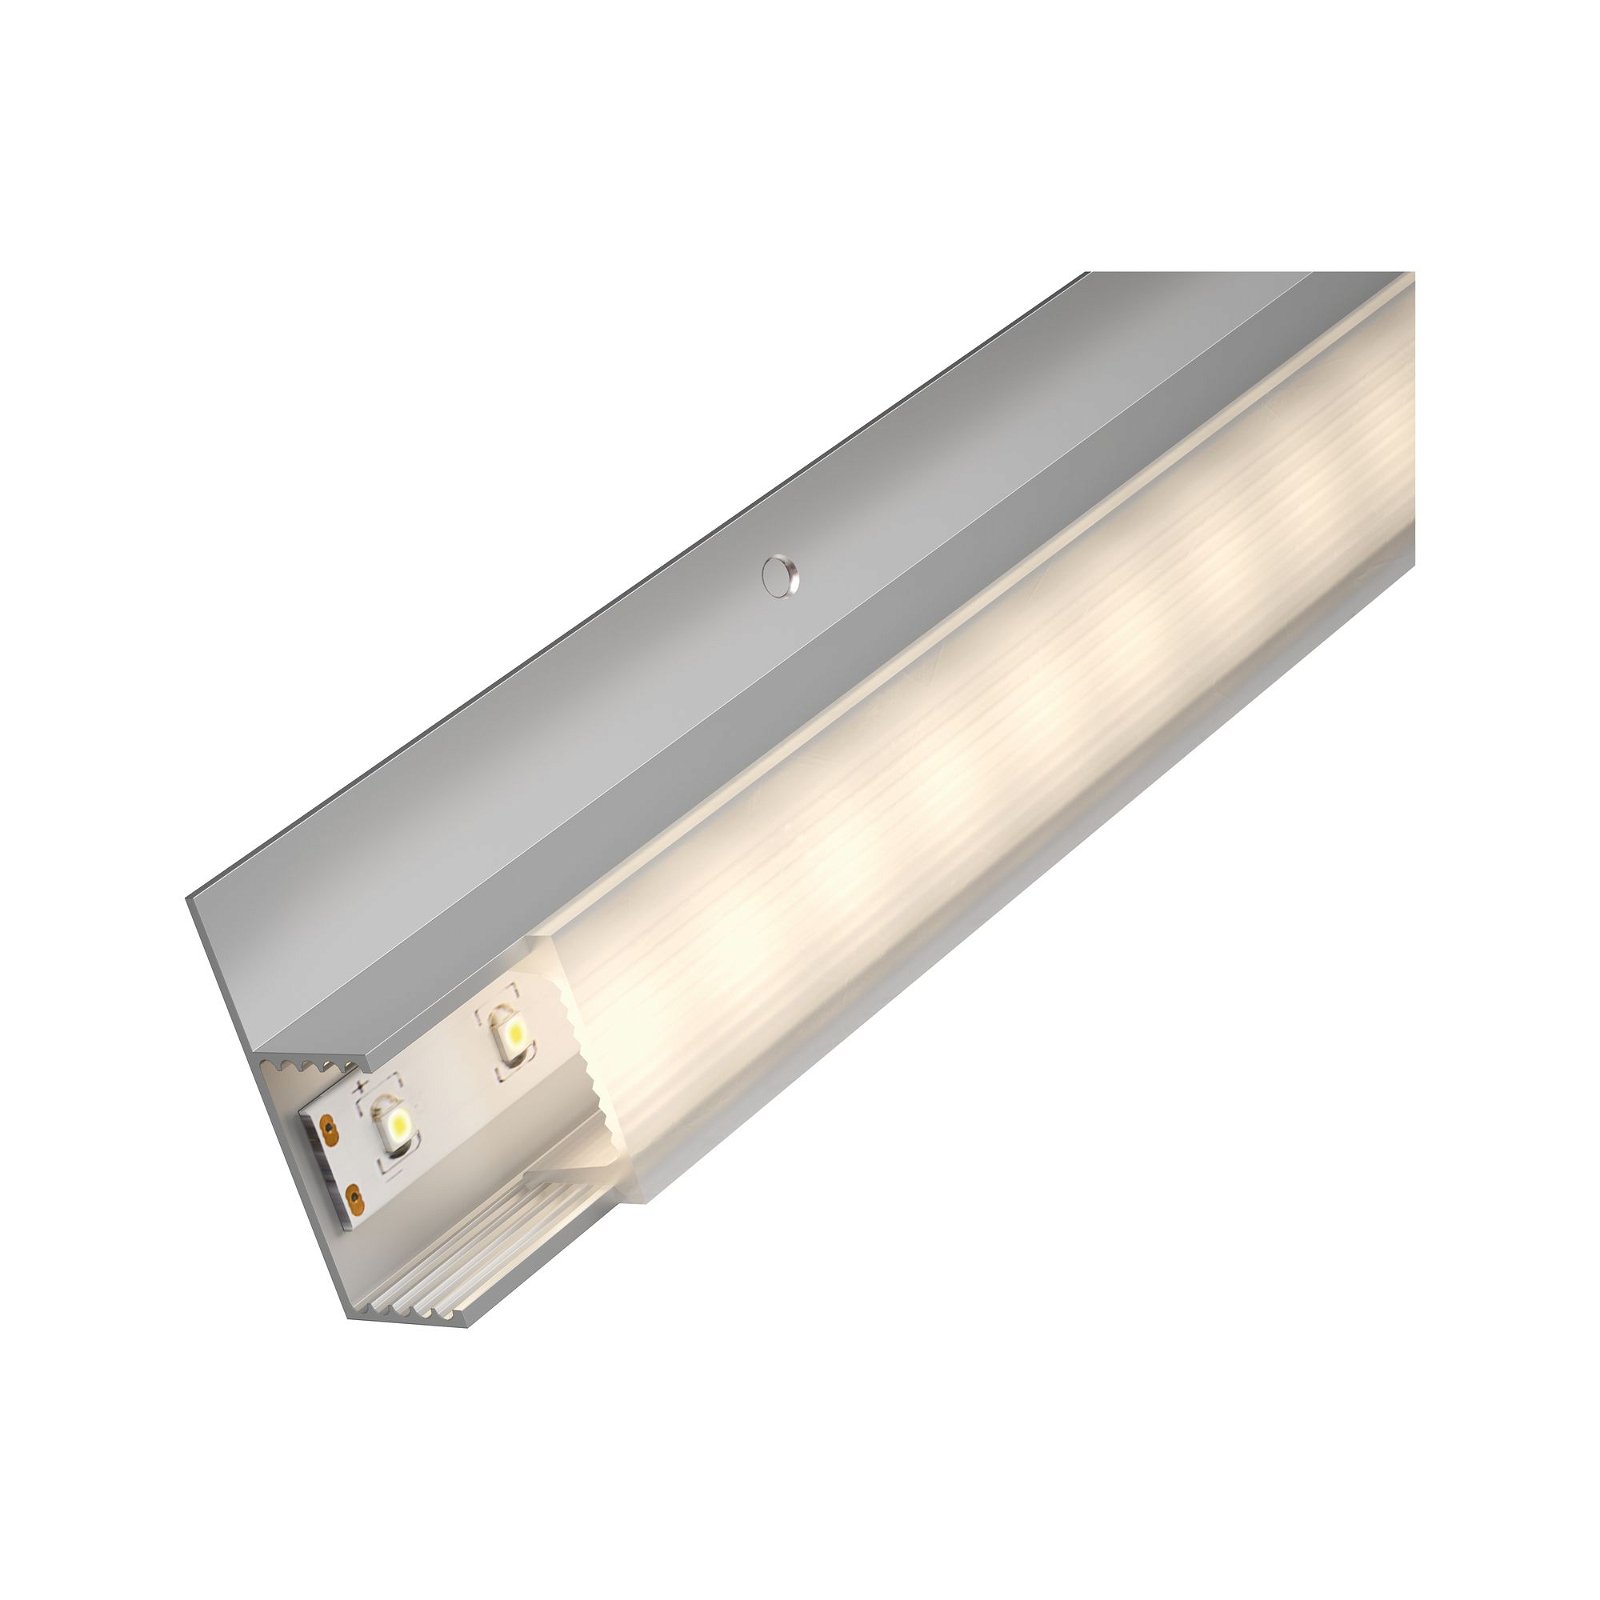 LED Strip recessed profile Socle White diffuser 2m Anodised aluminium/Satin